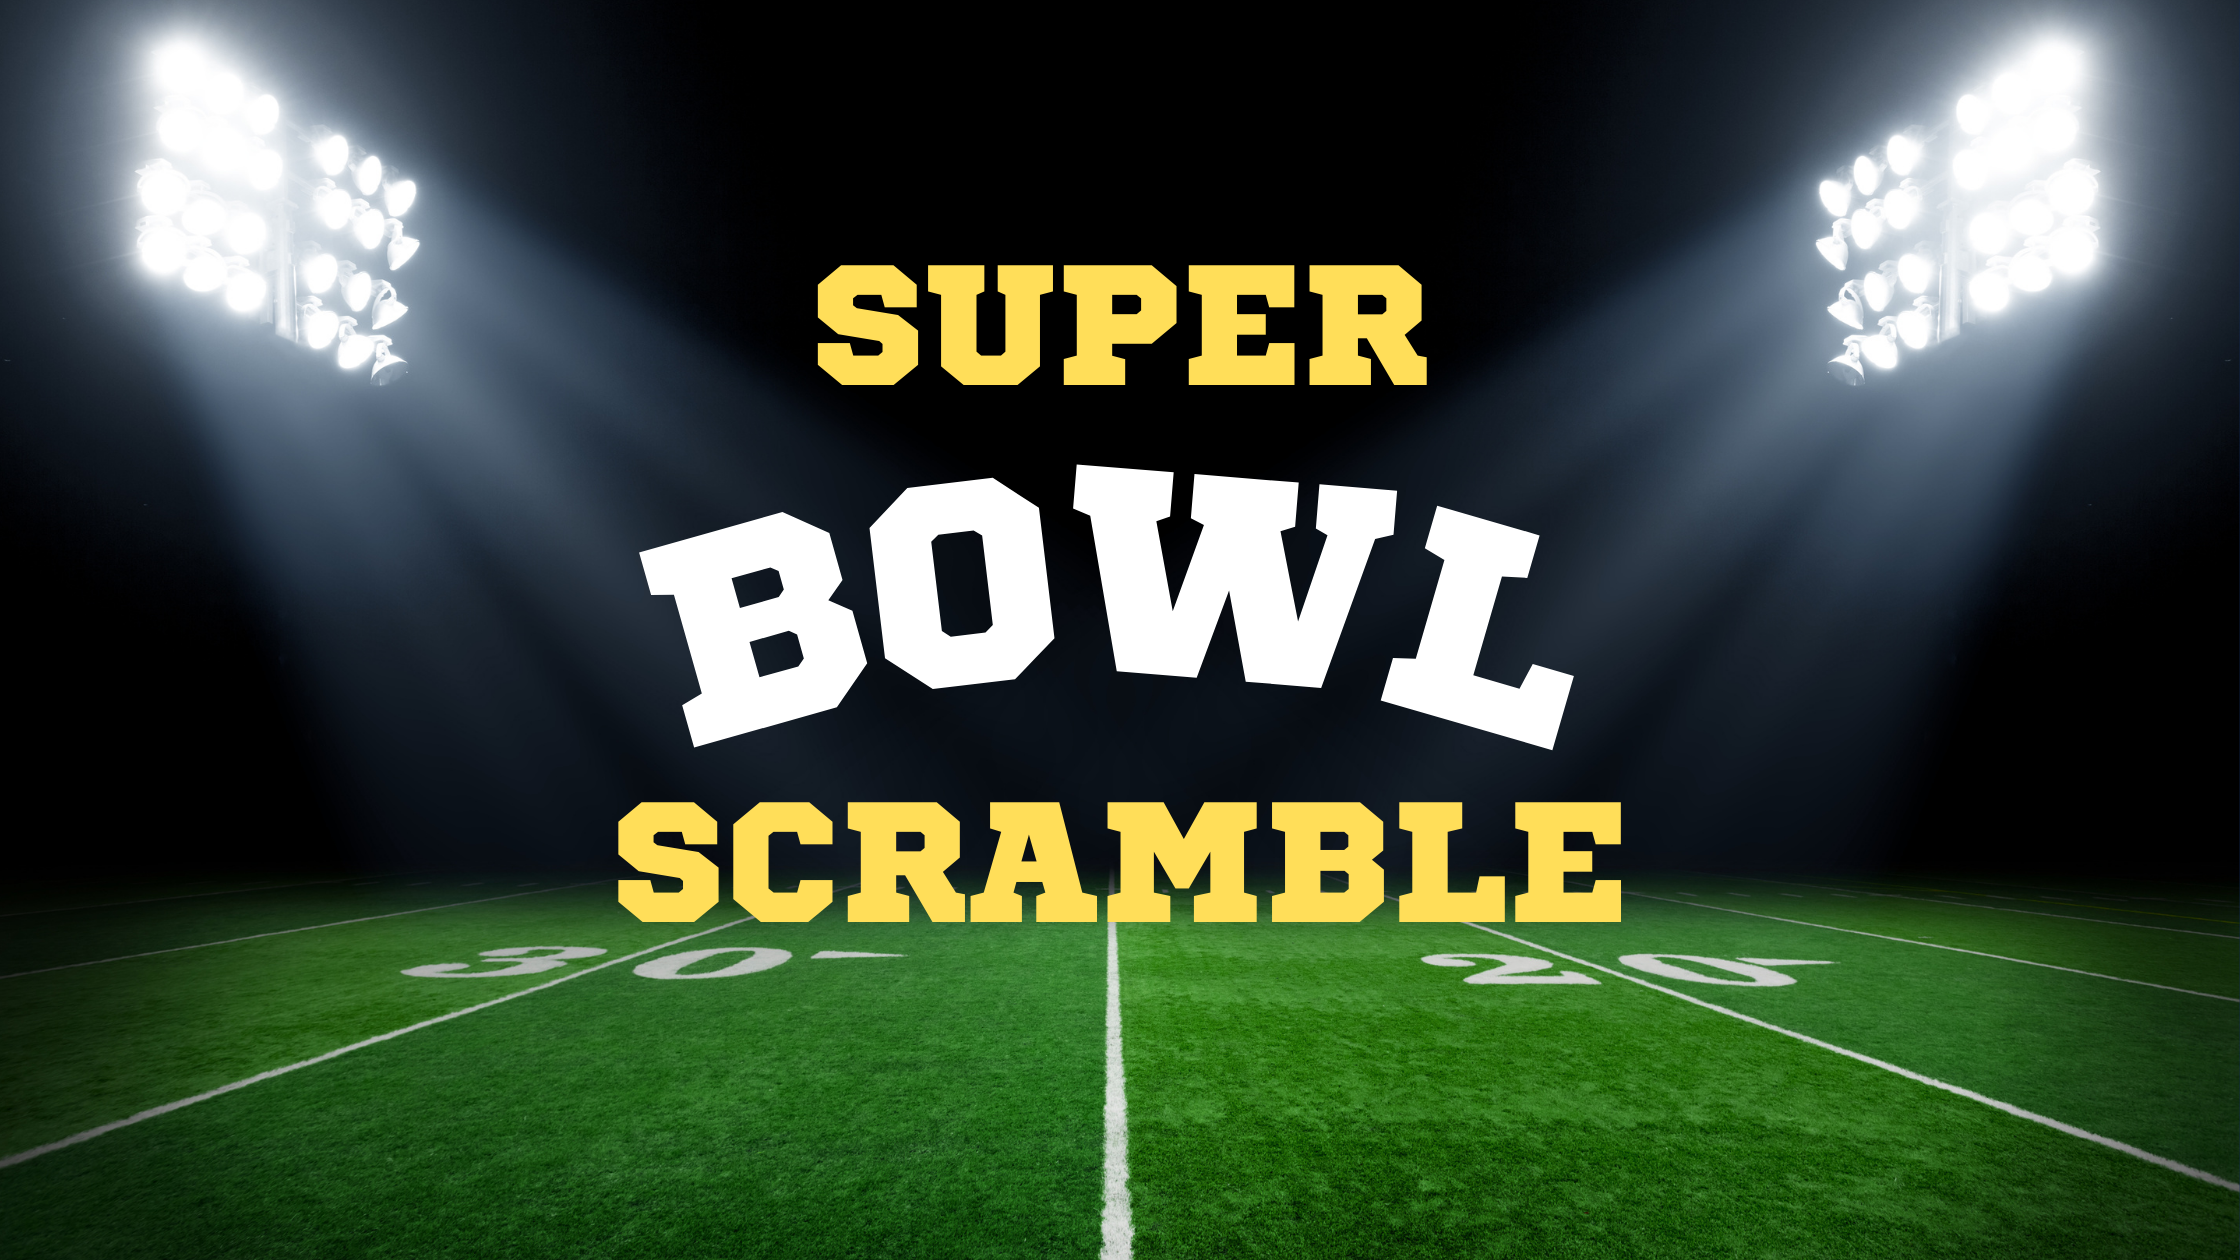 Super Bowl Scramble! 🏈